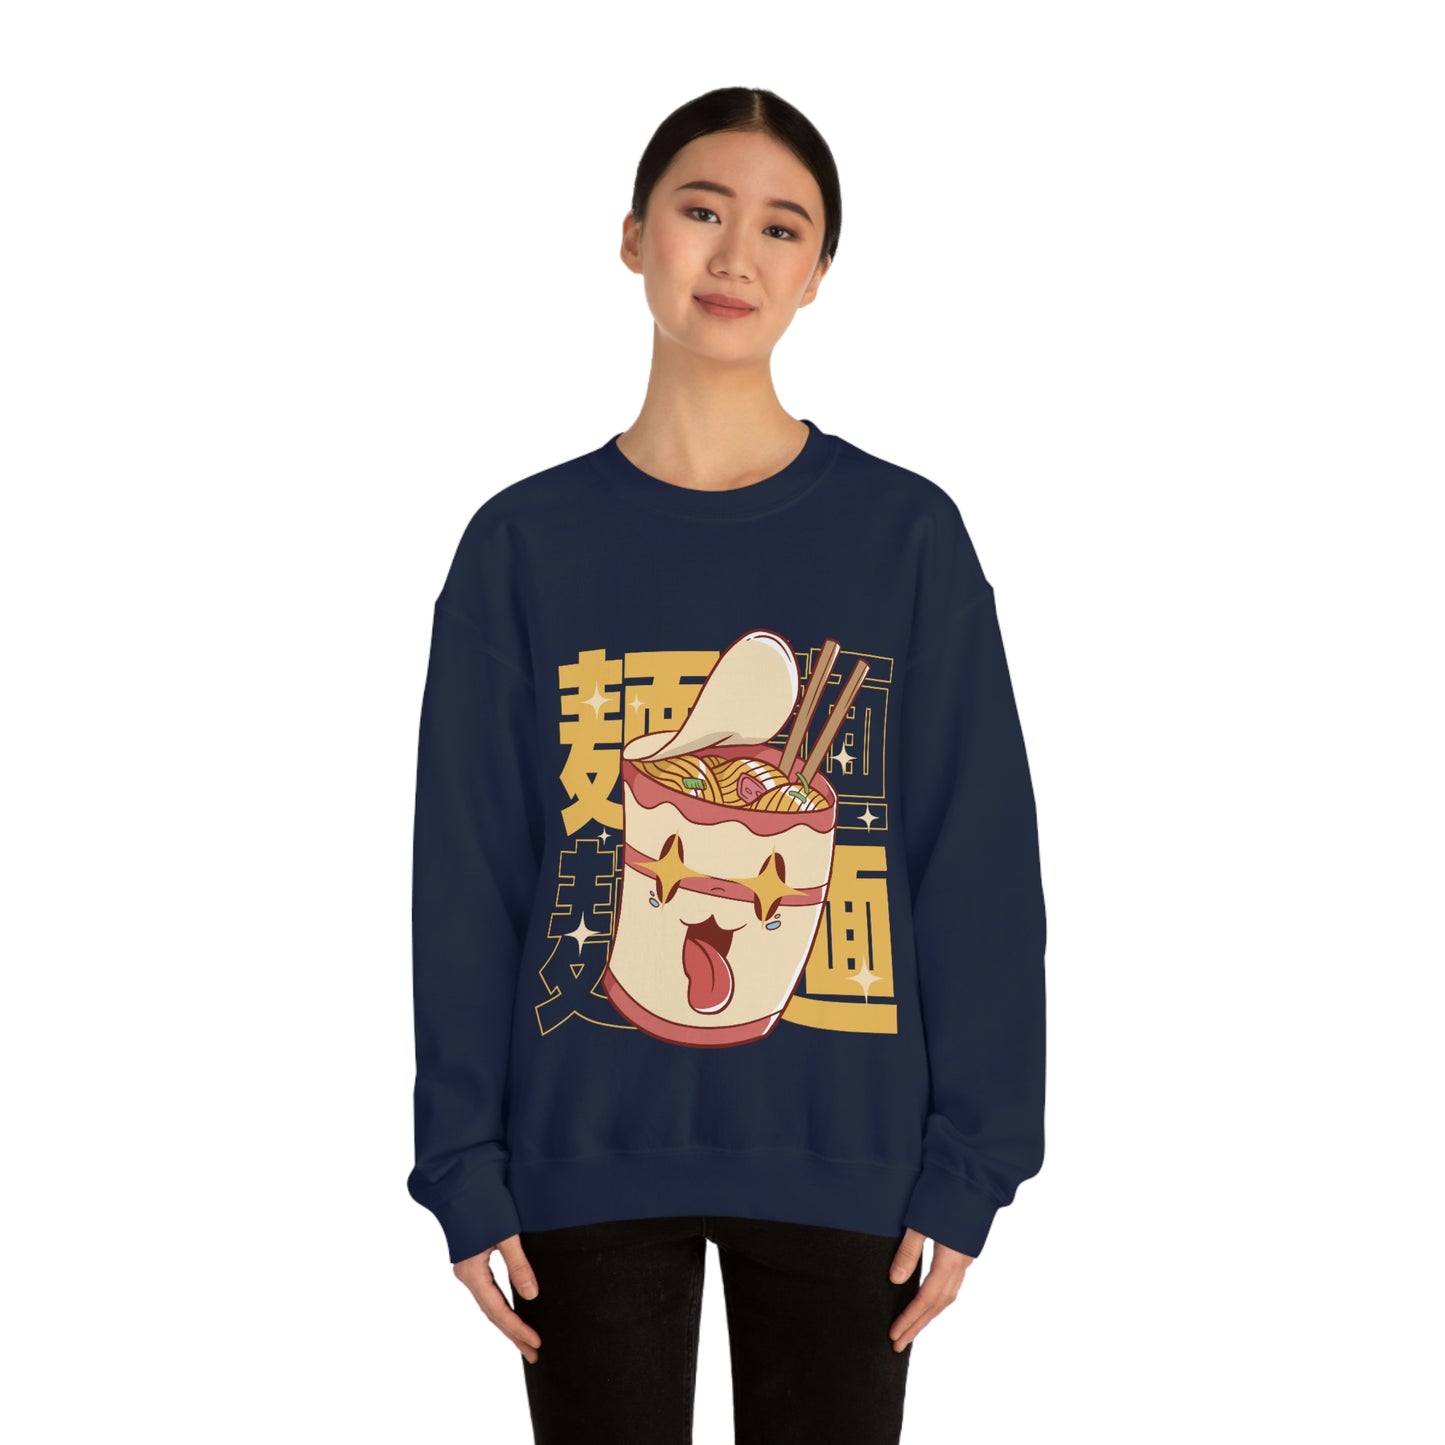 Kawaii Sweatshirt, Kawaii Clothing, Kawaii Clothes, Yami Kawaii Aesthetic, Pastel Kawaii Sweatshirt WOK Sweater Sweatshirt